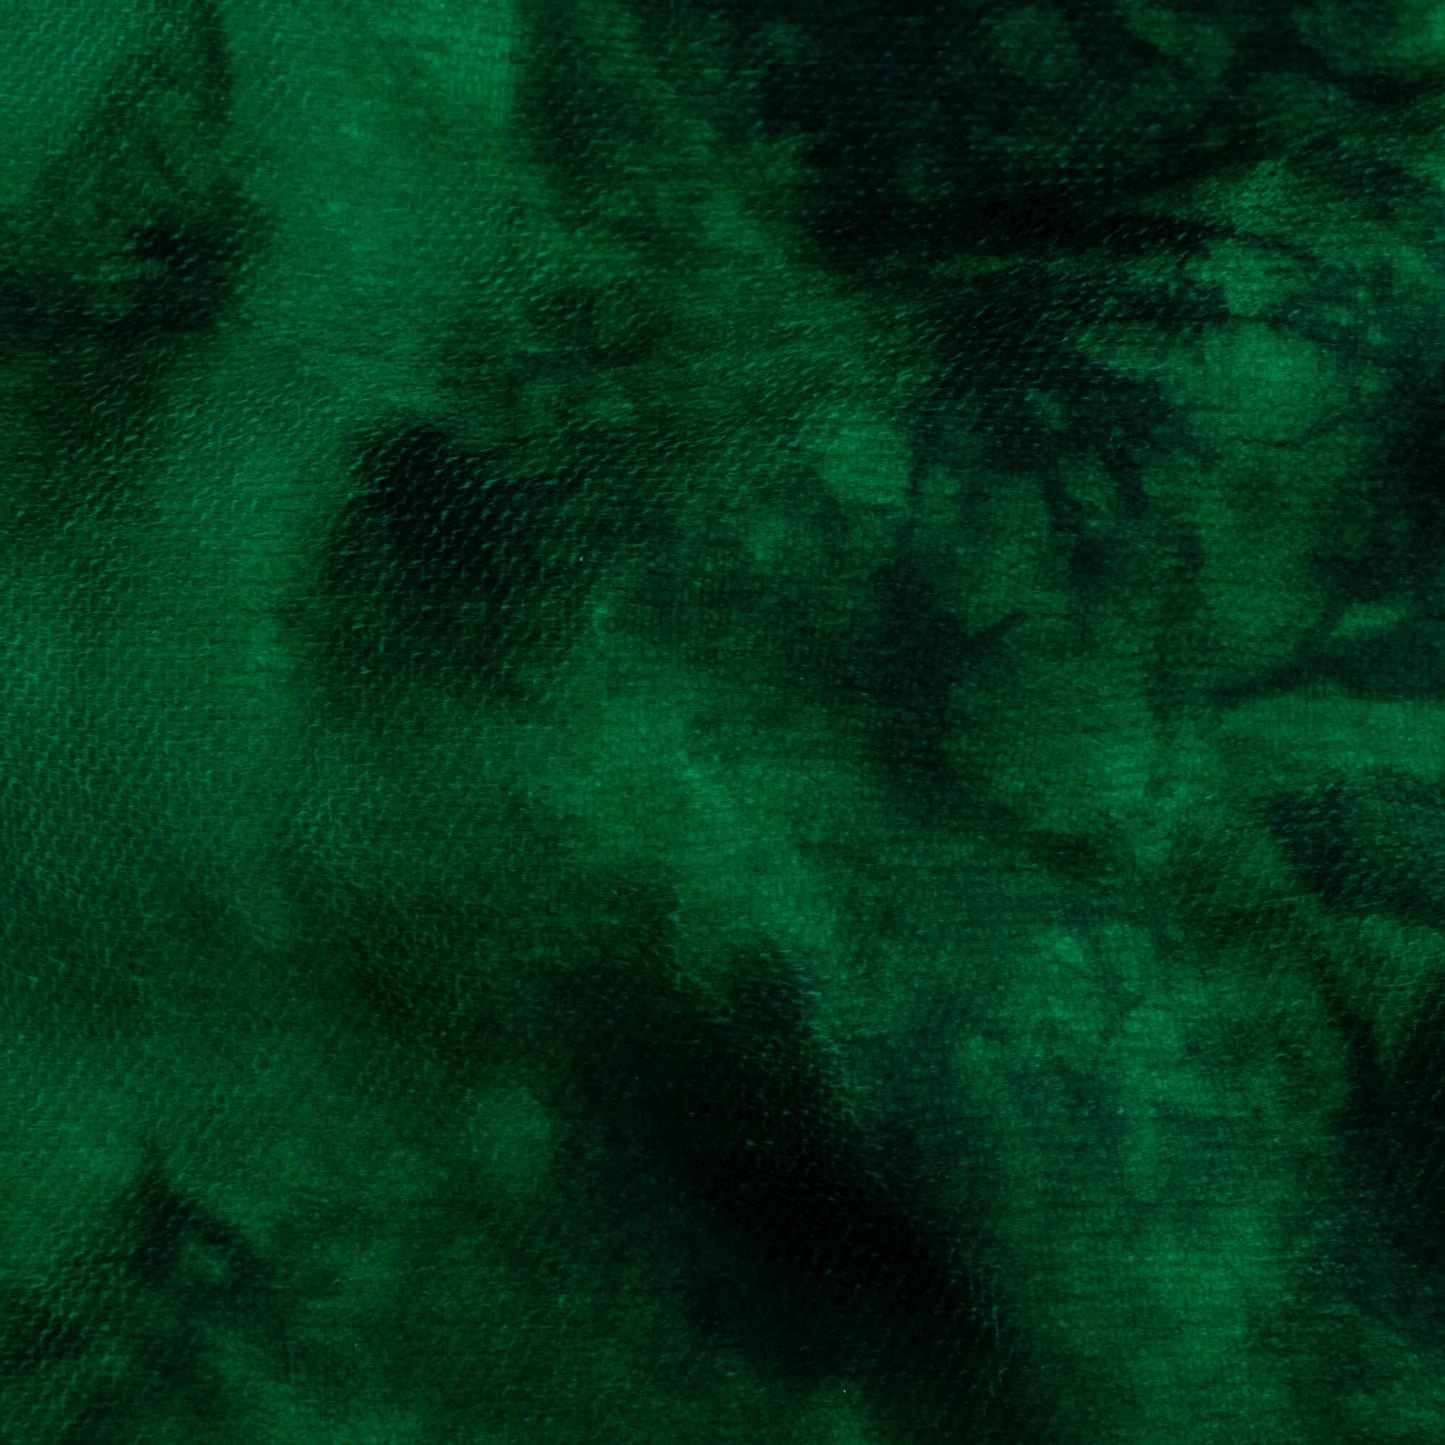 Bottle Green And Black Tie & Dye Pattern Digital Print Premium Velvet Fabric